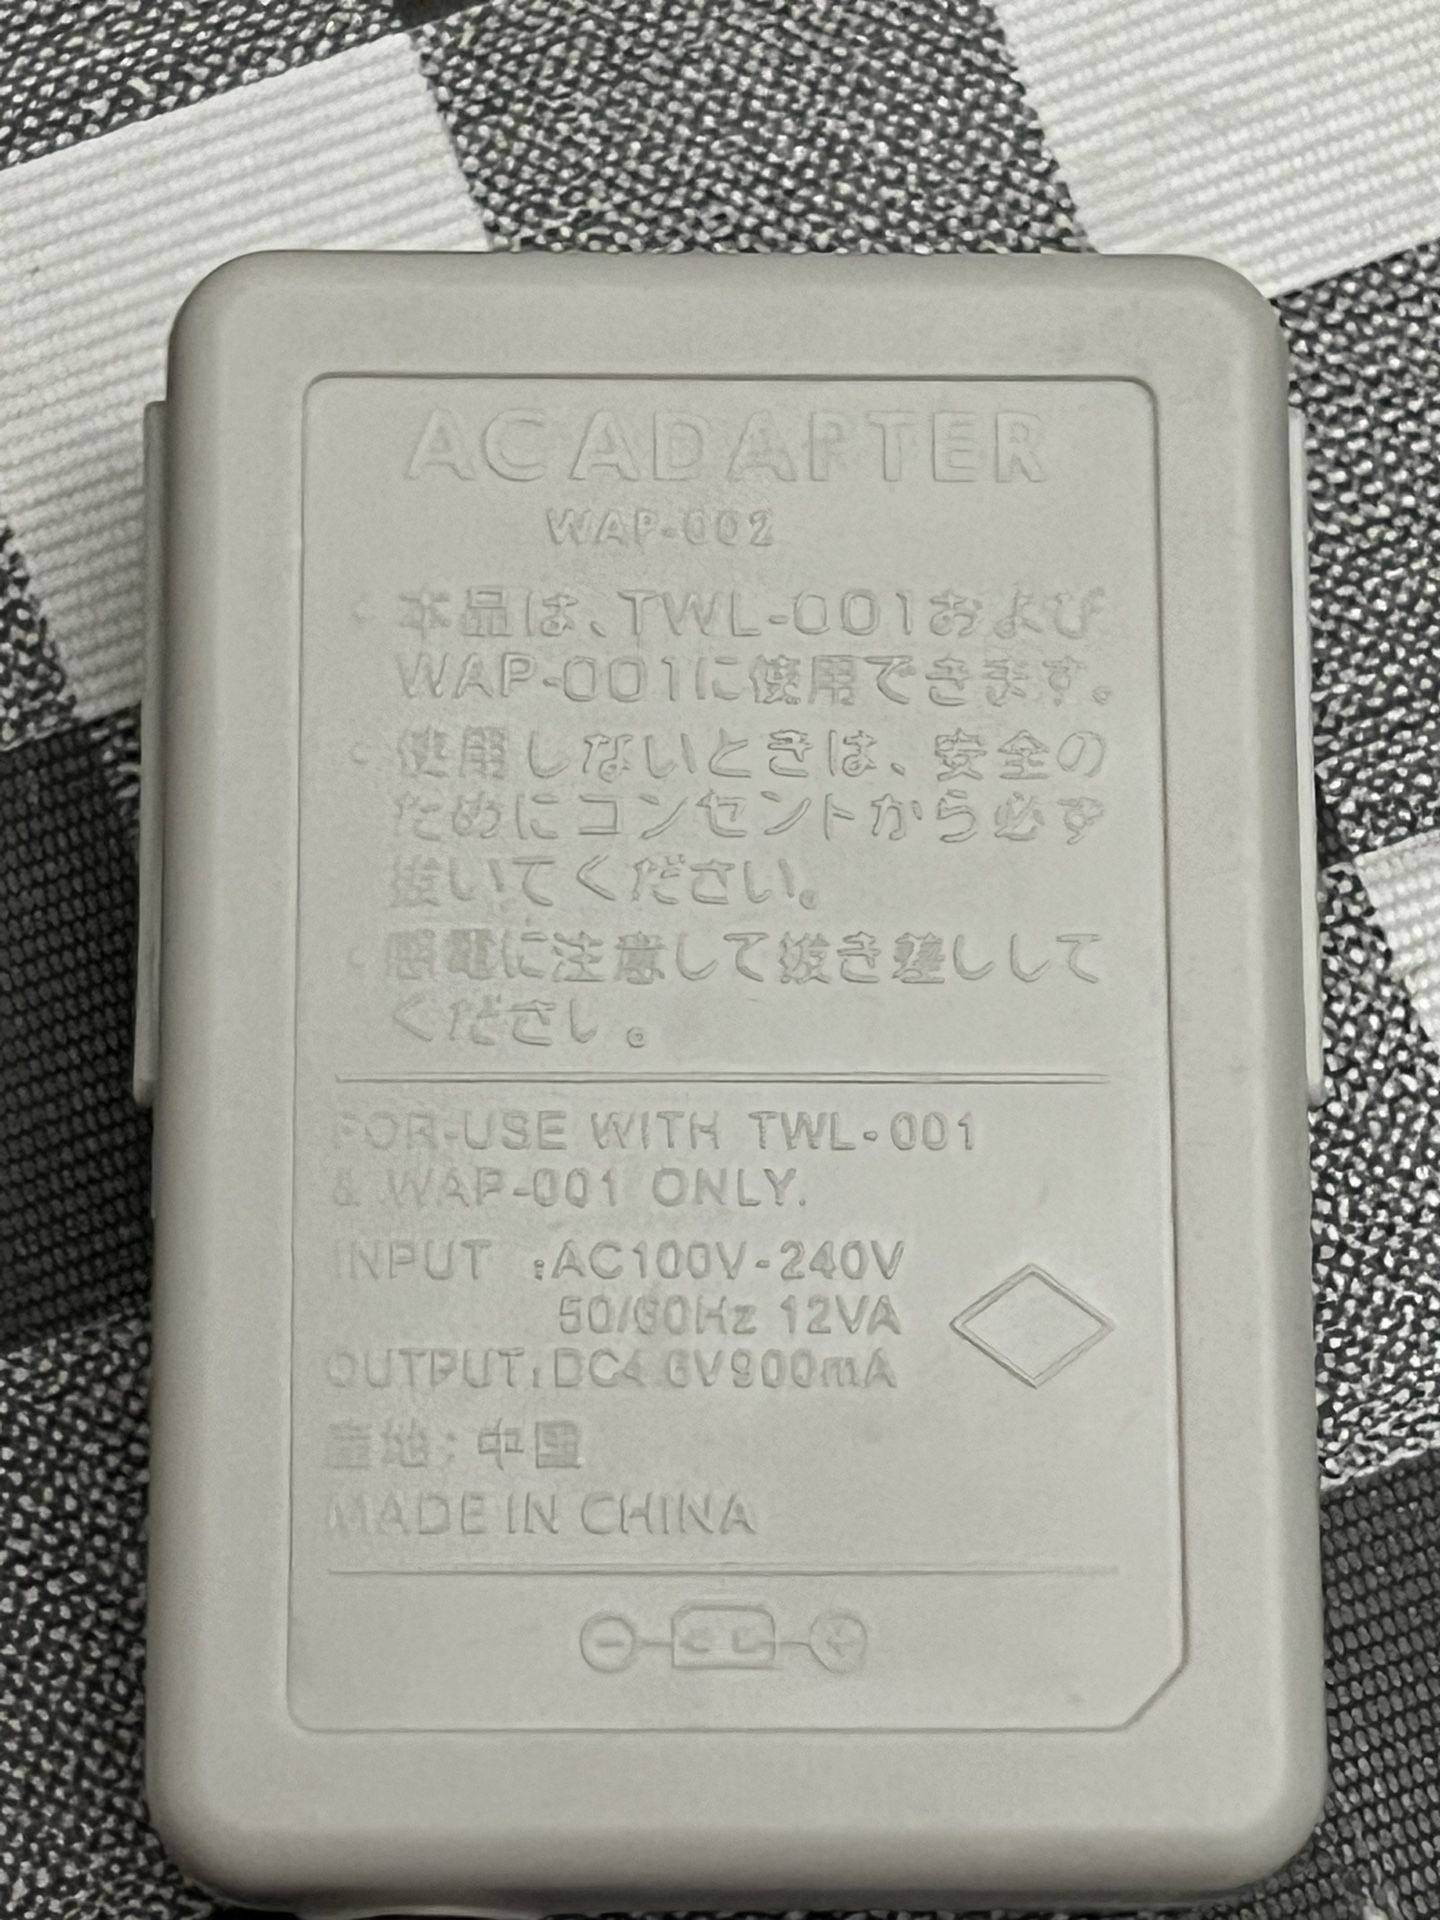 Original Nintendo 3DS XL Power Adapter Charger Wap-002 